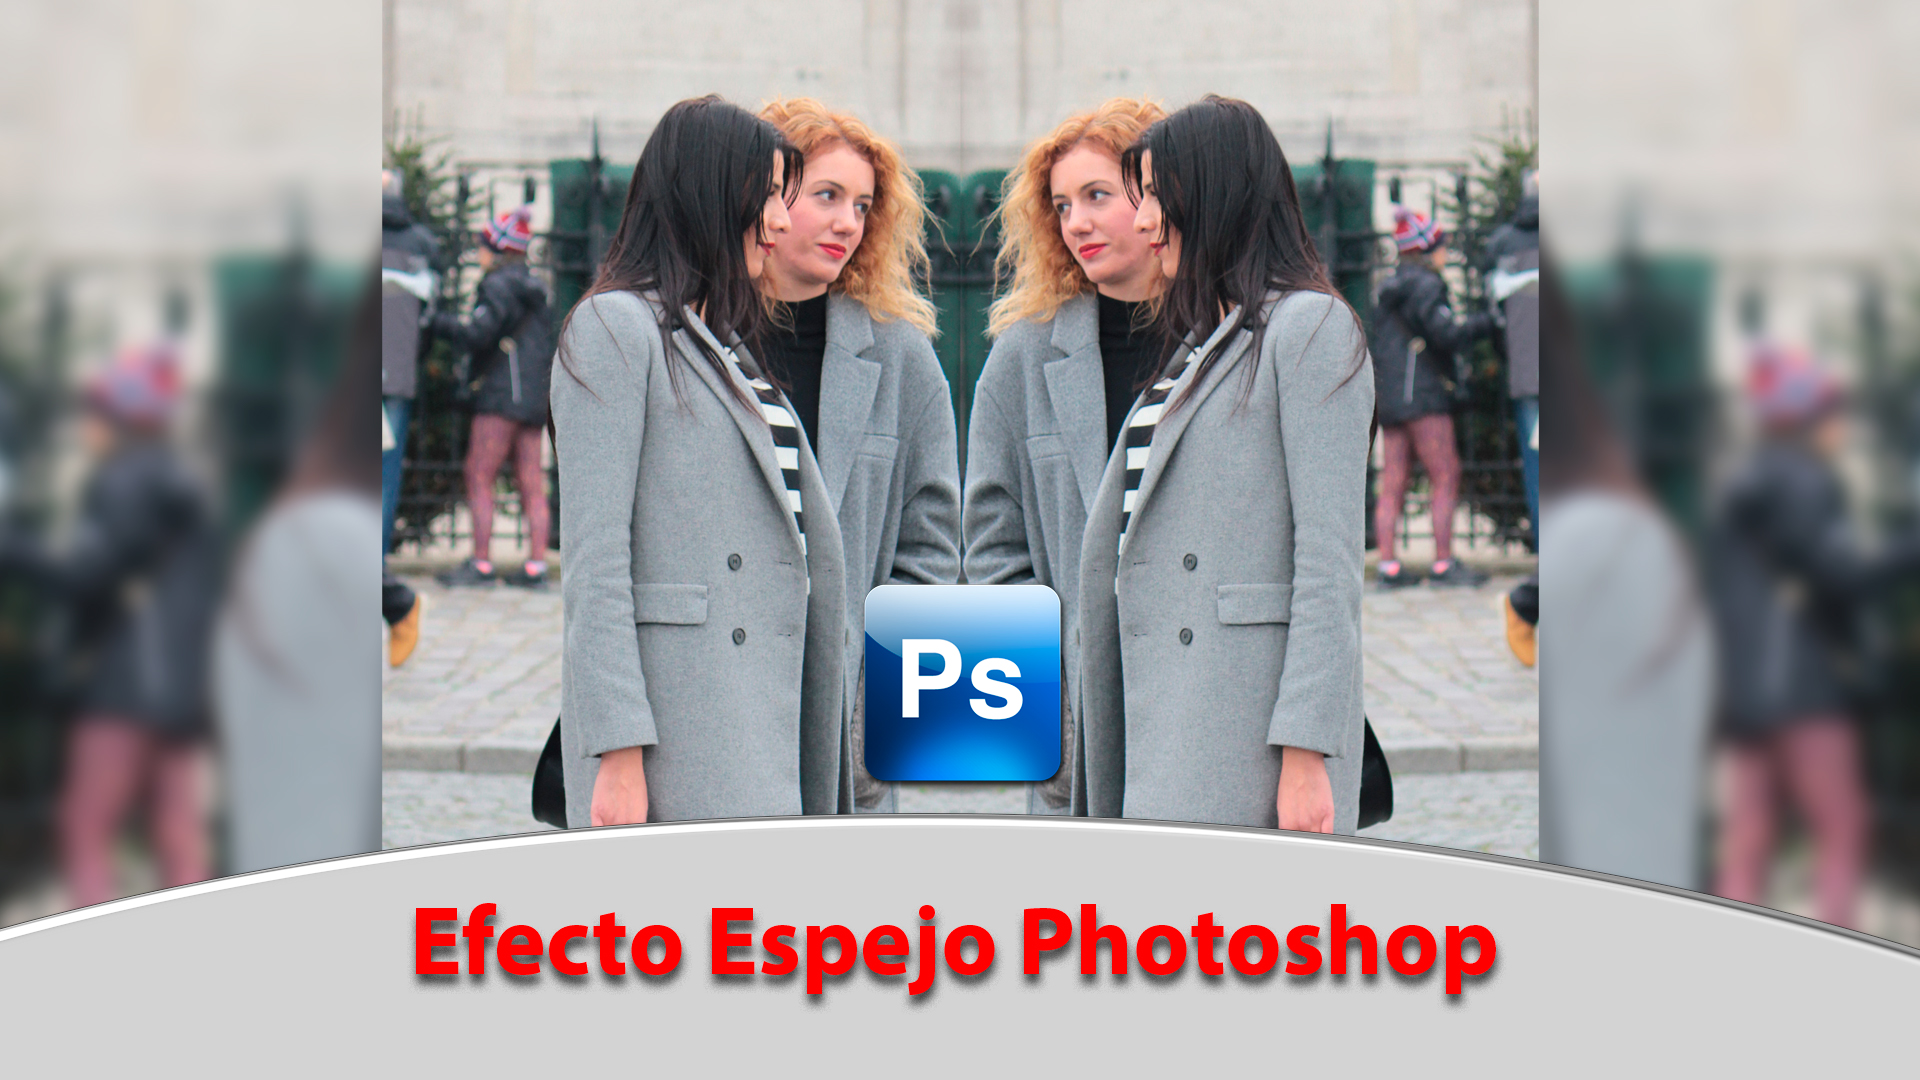 Videotutorial Adobe Photoshop: Cómo hacer el efecto espejo photoshop 2019